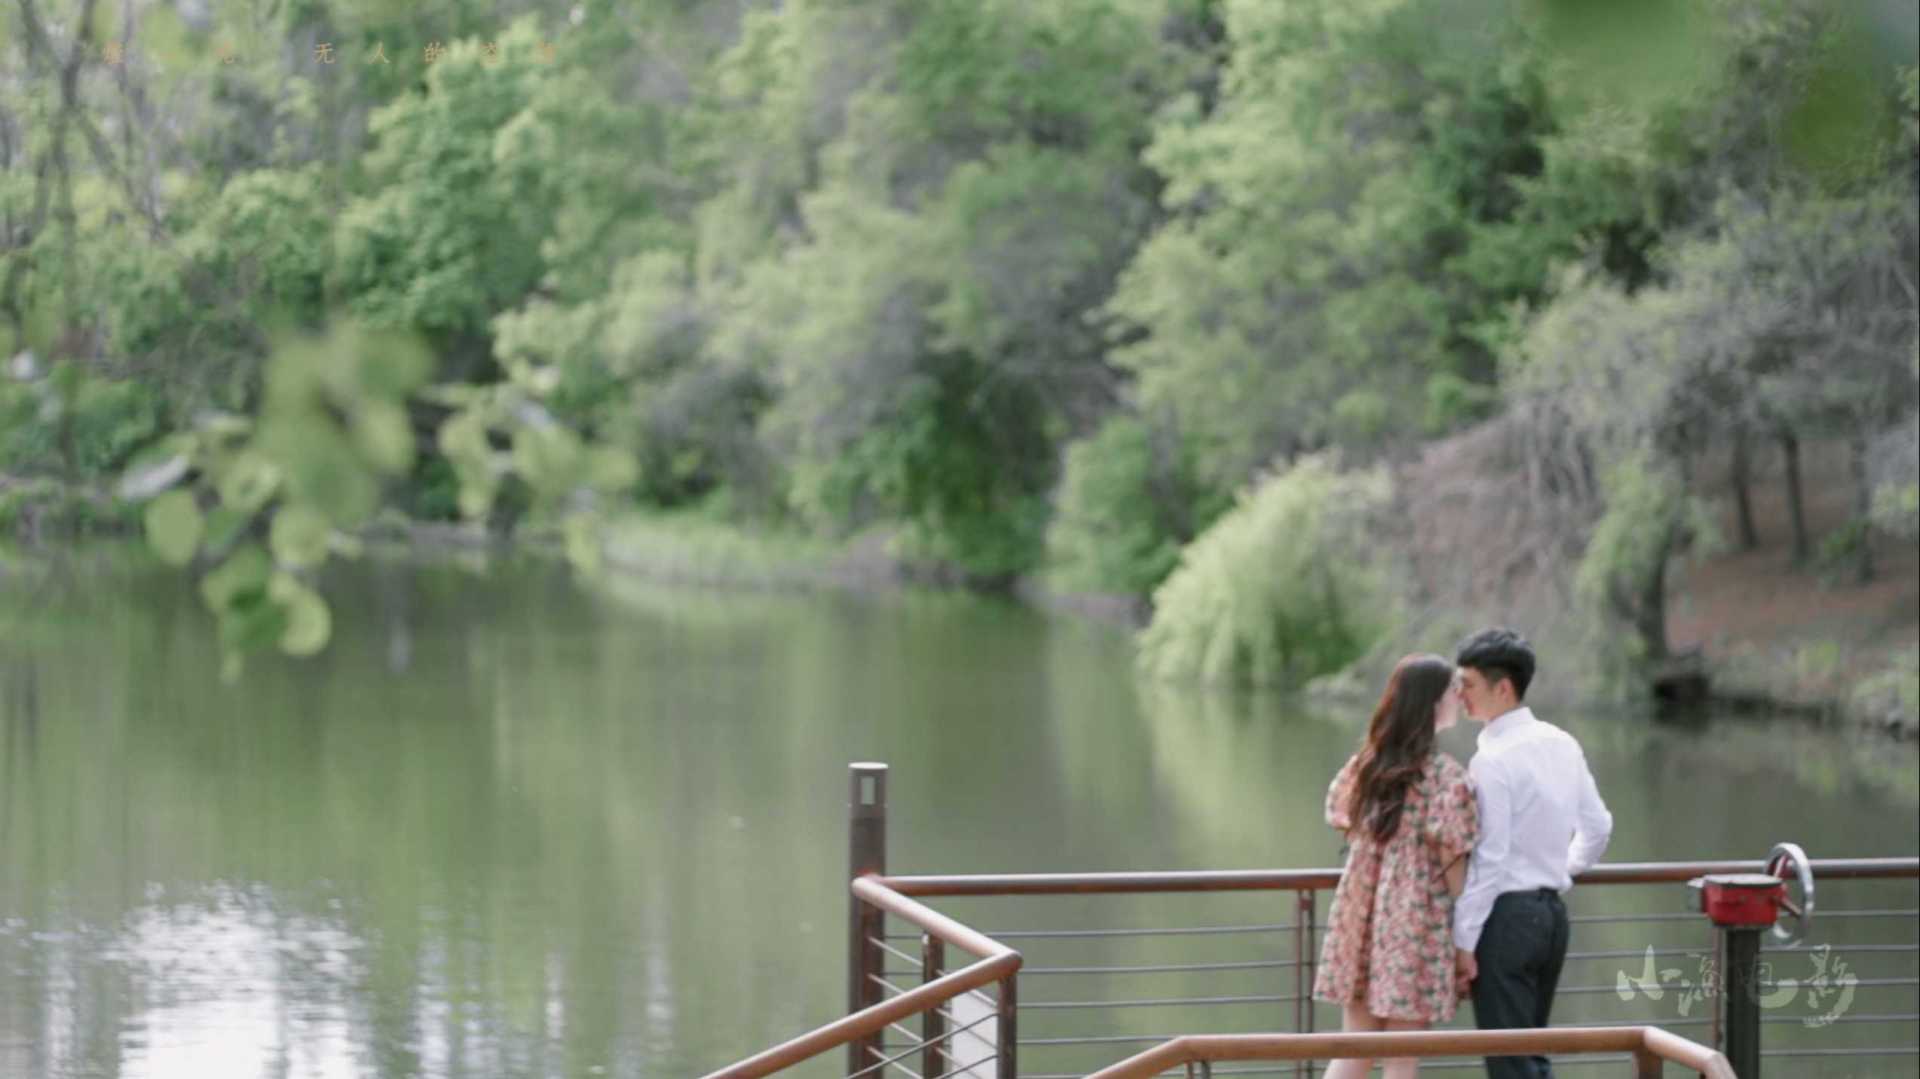 与你相遇的五月 - 小渔电影 - 爱情短片